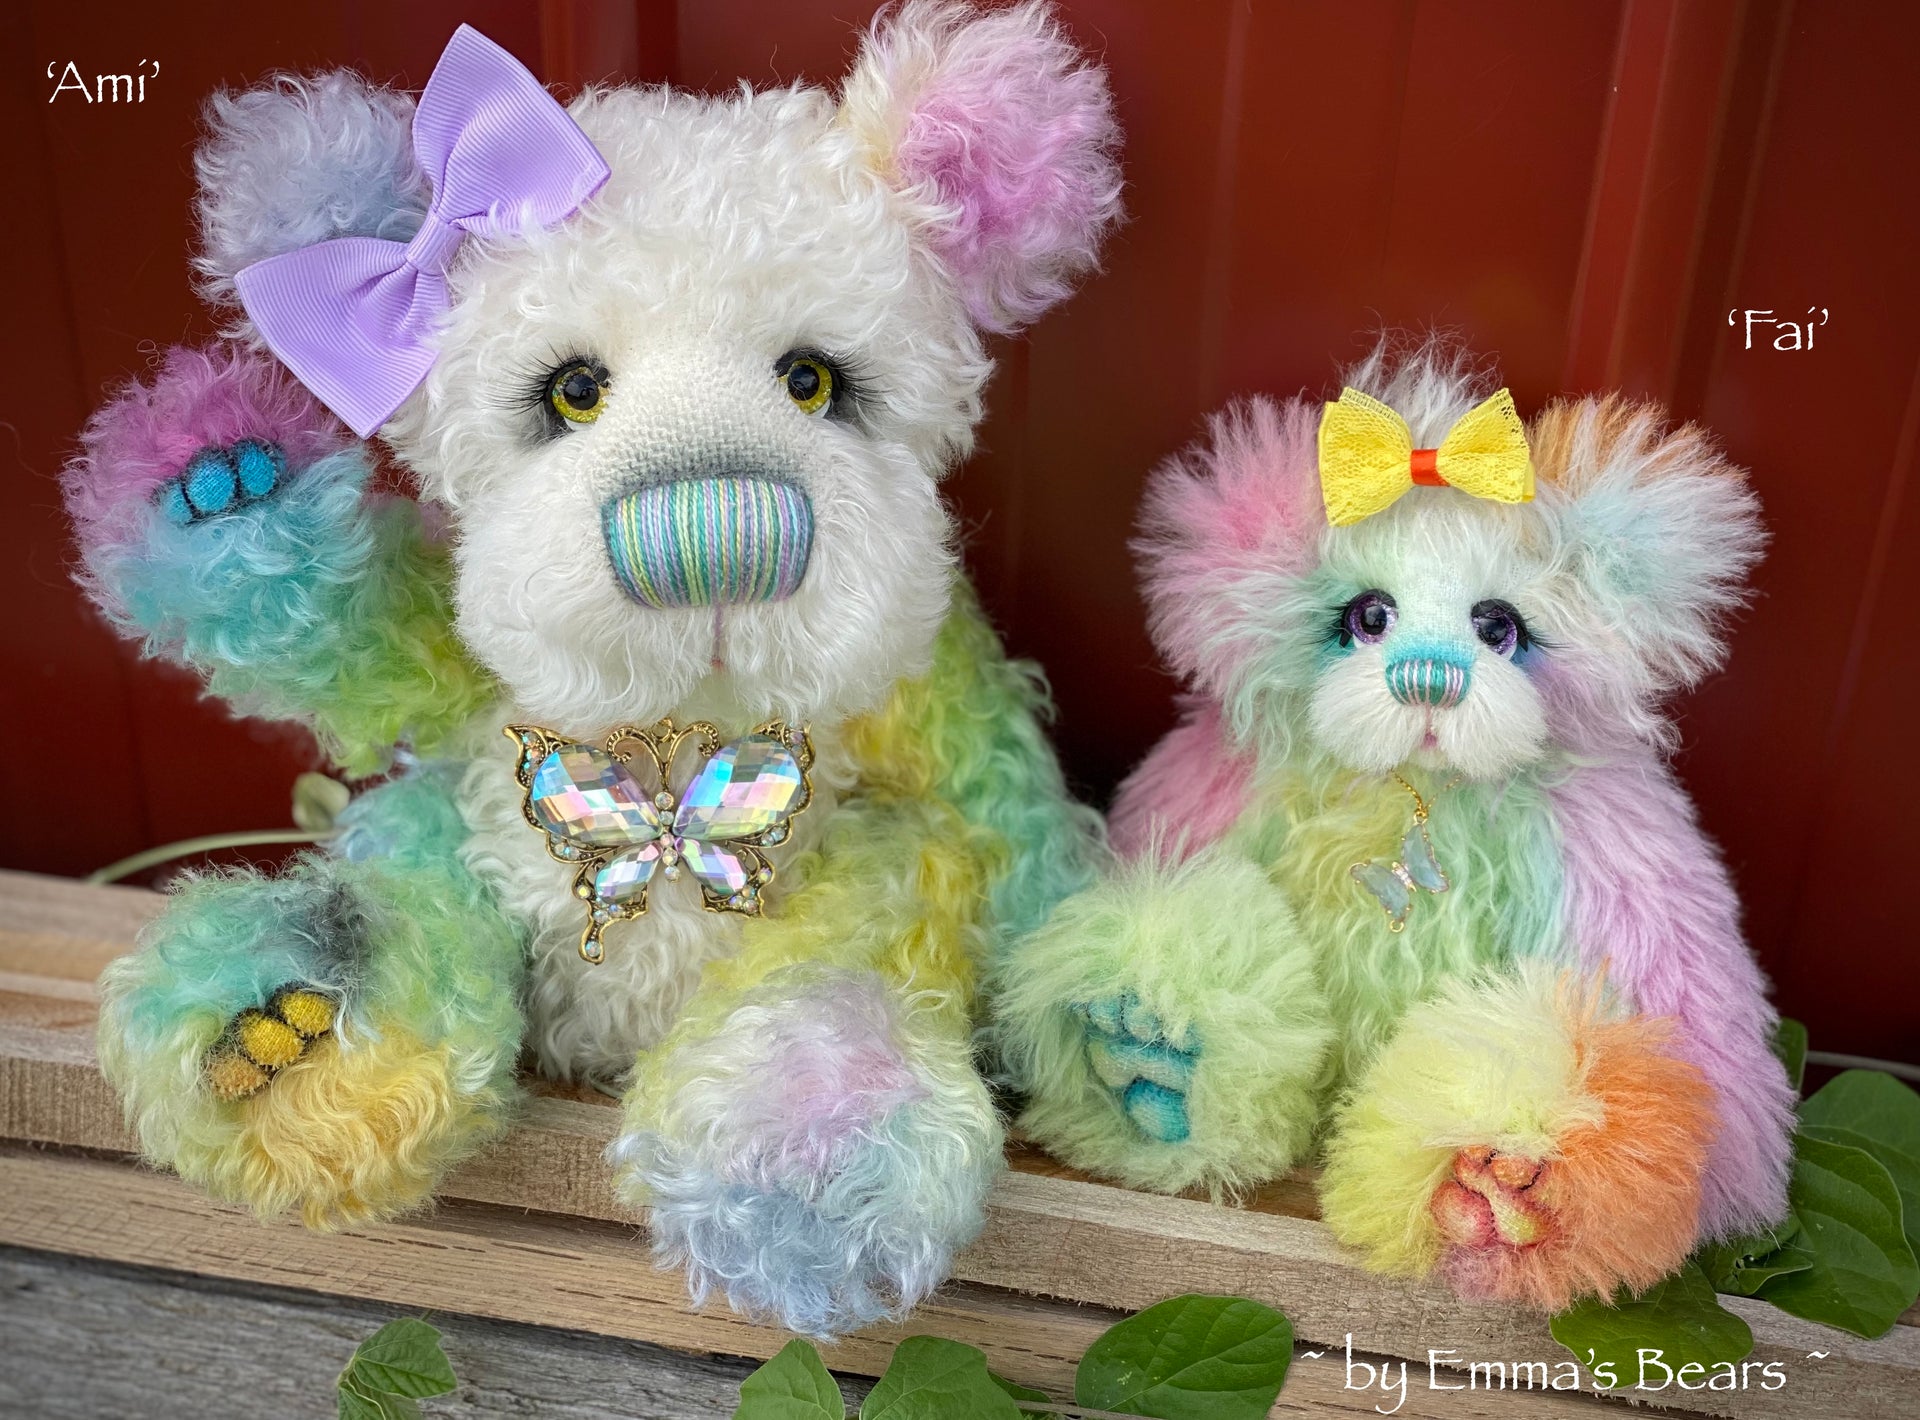 Ami - 12" Hand Dyed Mohair Artist Bear by Emma's Bears - OOAK